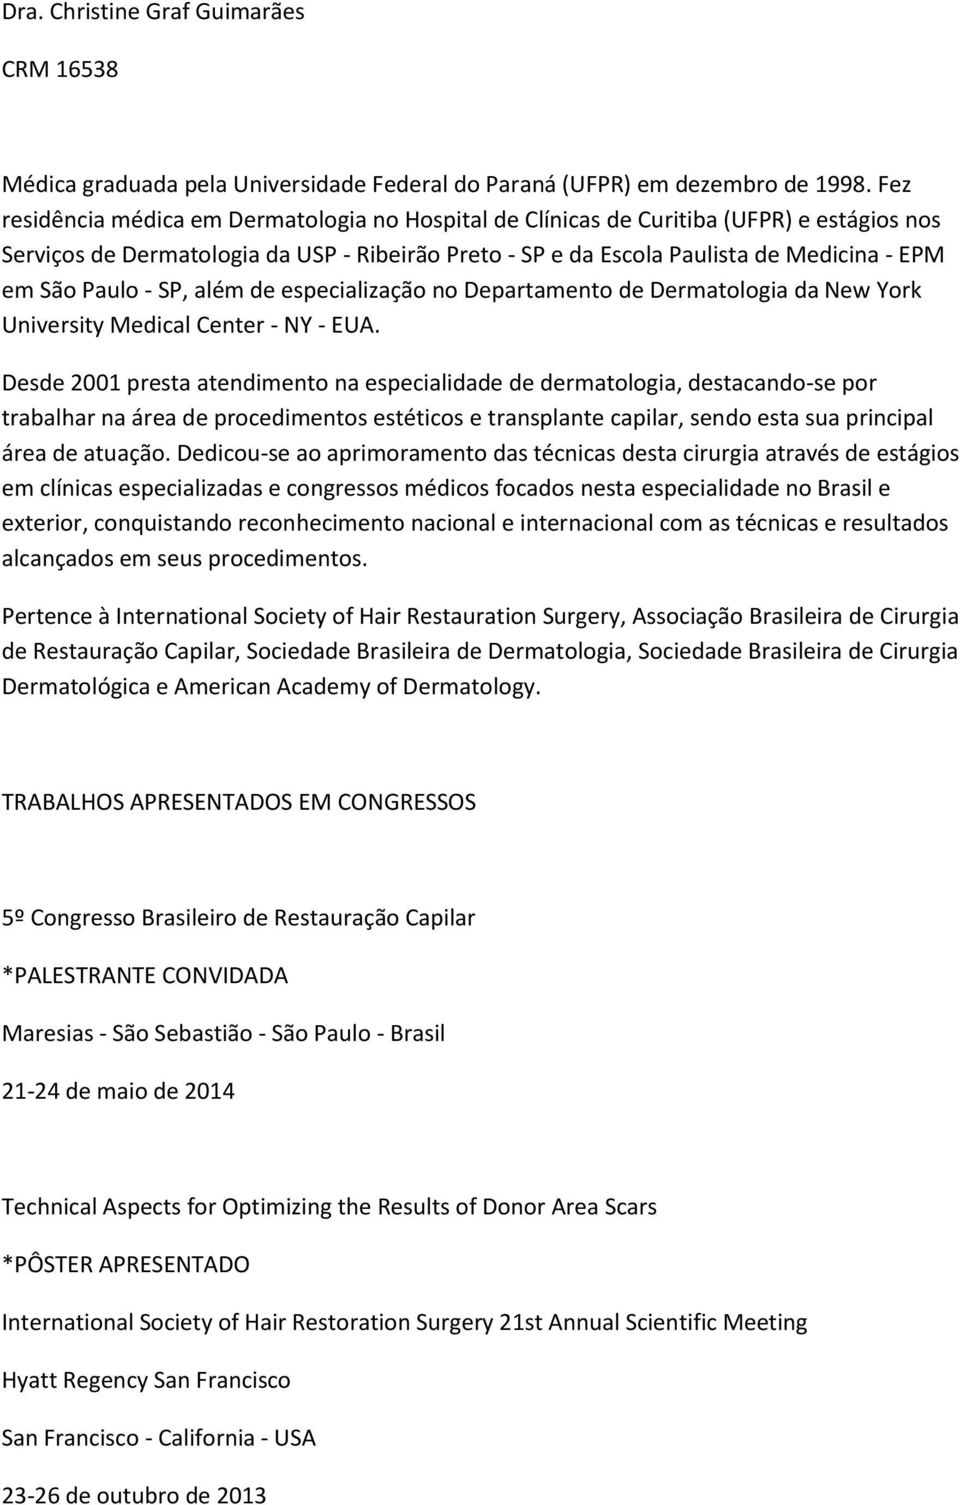 Paulo - SP, além de especialização no Departamento de Dermatologia da New York University Medical Center - NY - EUA.